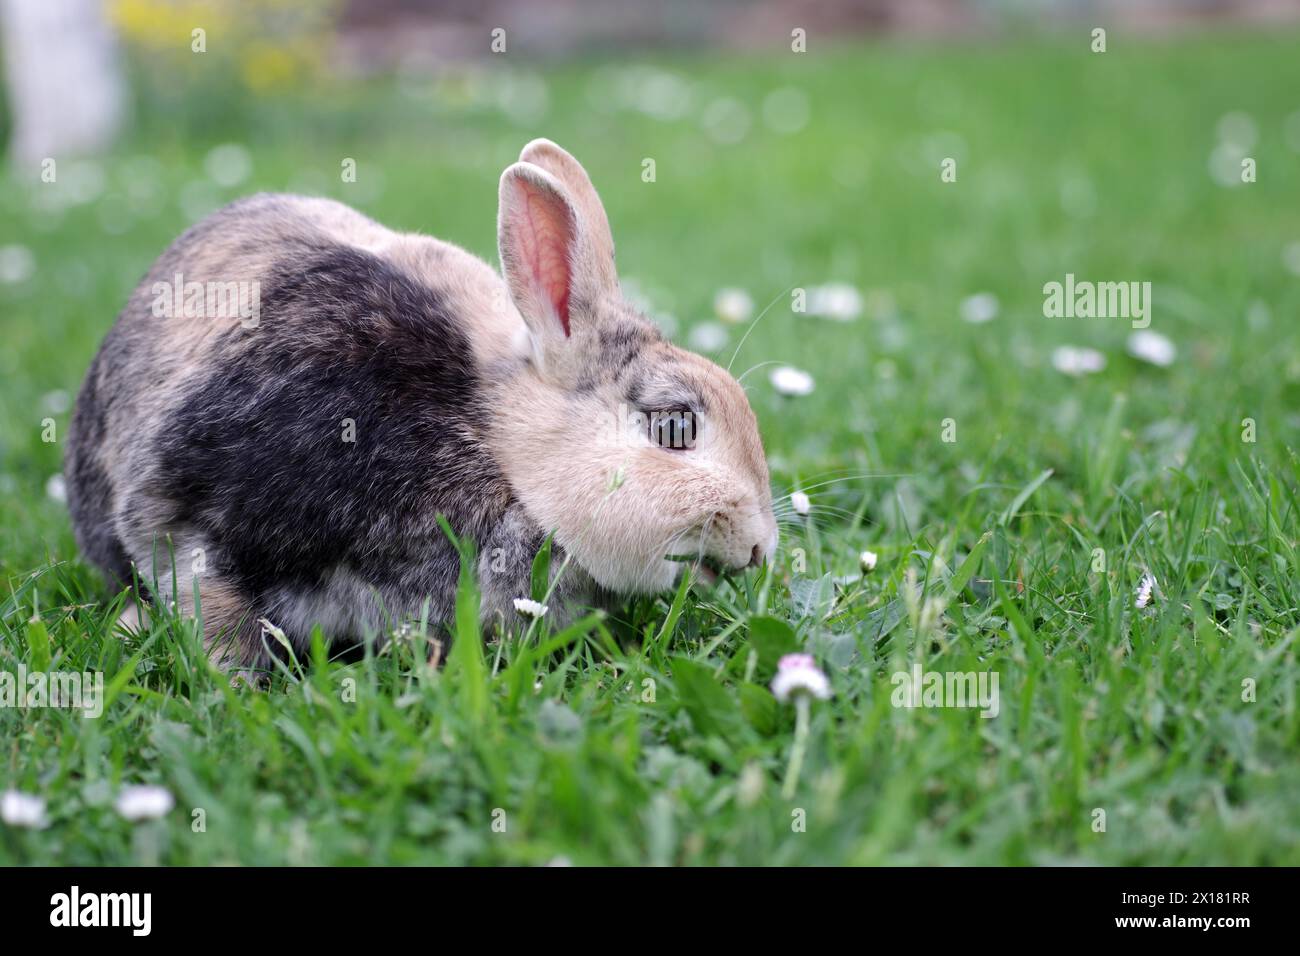 Lapin (Oryctolagus cuniculus domestica), animal domestique, herbe, manger, gros plan d'un lapin dans le pré. L'animal grigace sur de l'herbe fraîche Banque D'Images